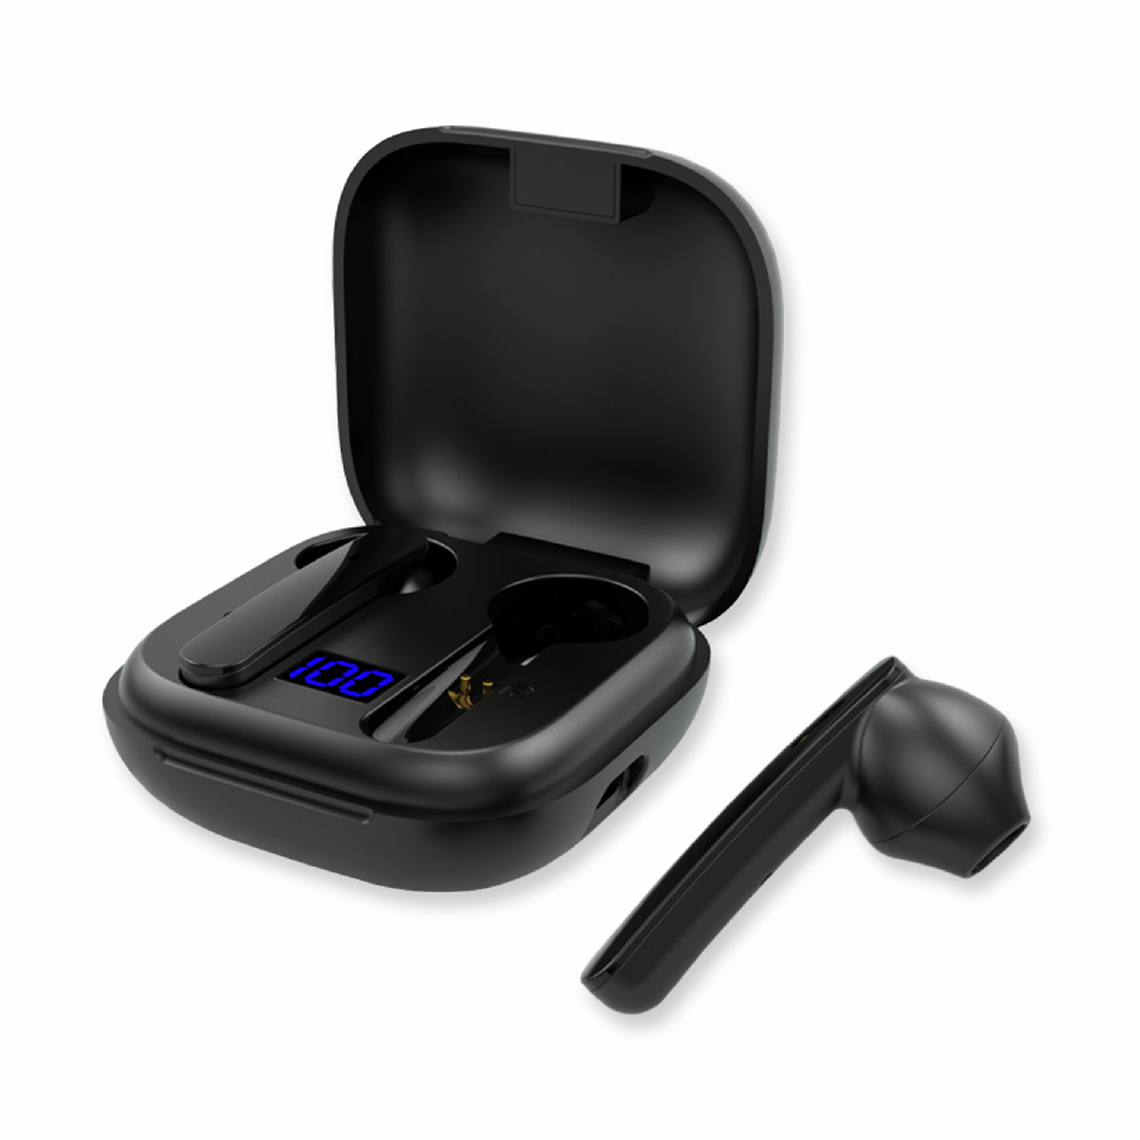 Drop Sound - Ecouteur Bluetooth Drop Sound 5.0 Noir - Waterproof, Contrôle tactile, Micro, Son puissant, indicateur batterie 12h, box rangement magnétique et rechargeable - Ecouteurs intra-auriculaires